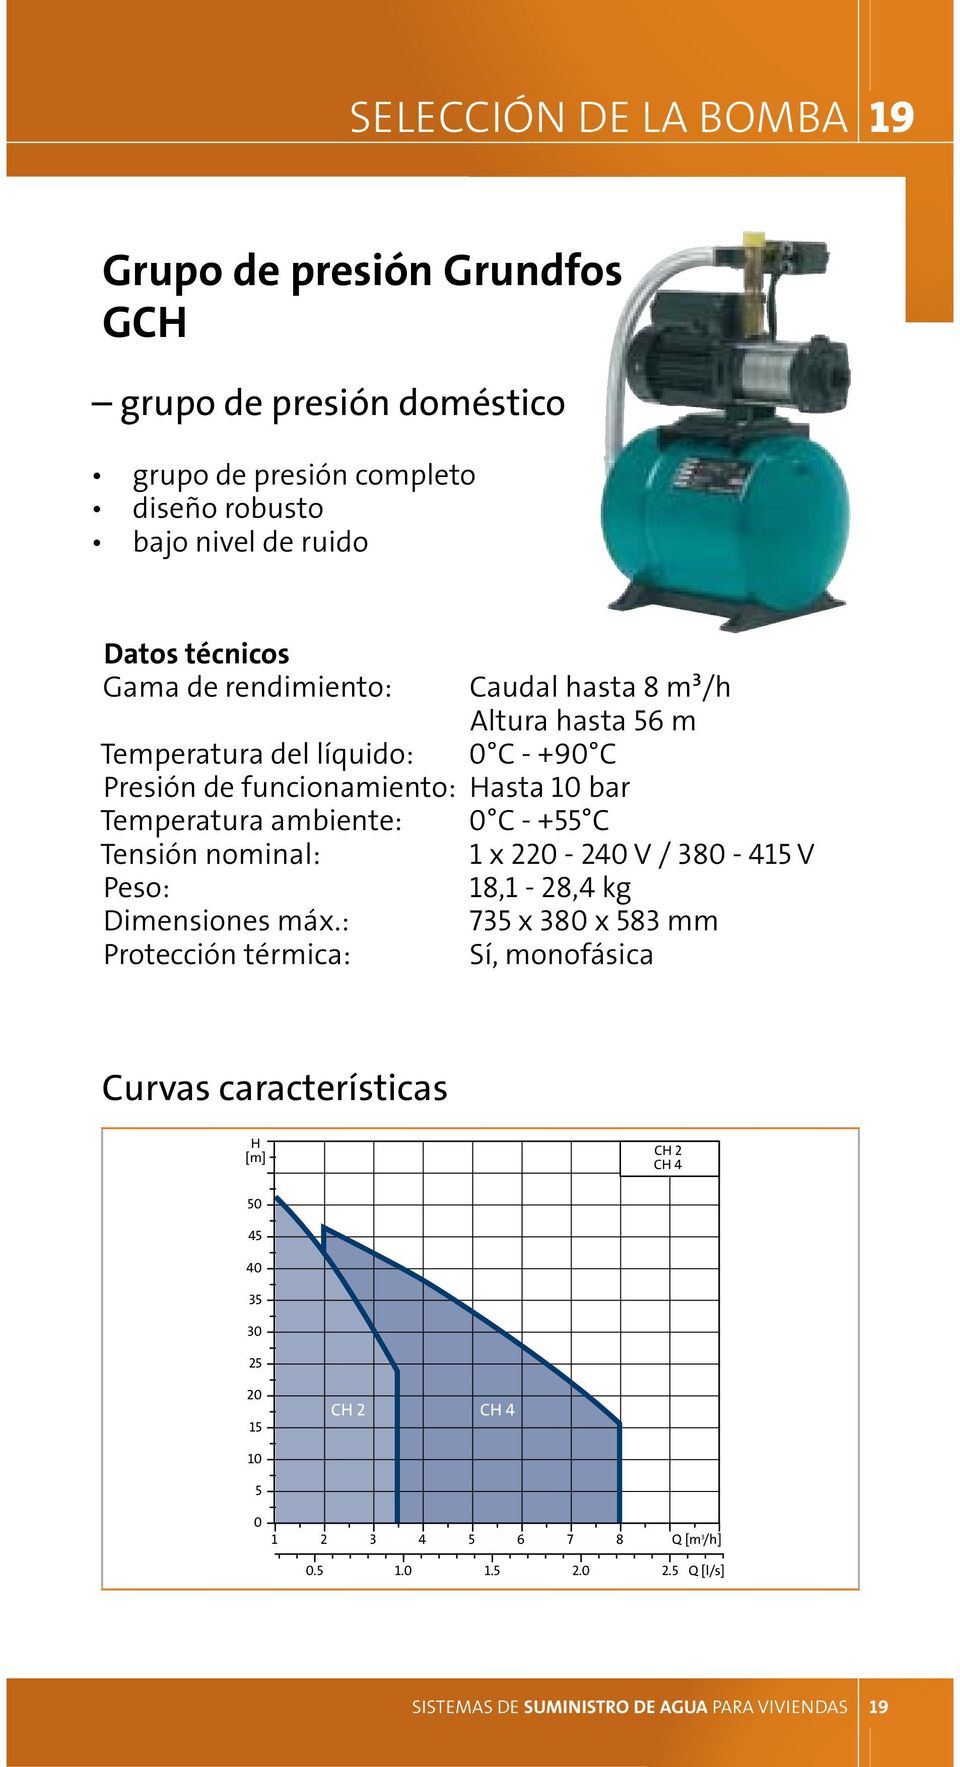 funcionamiento: Hasta 10 bar Temperatura ambiente: 0 C - +55 C Tensión nominal: 1 x 220-240 V / 380-415 V Peso: 18,1-28,4 kg